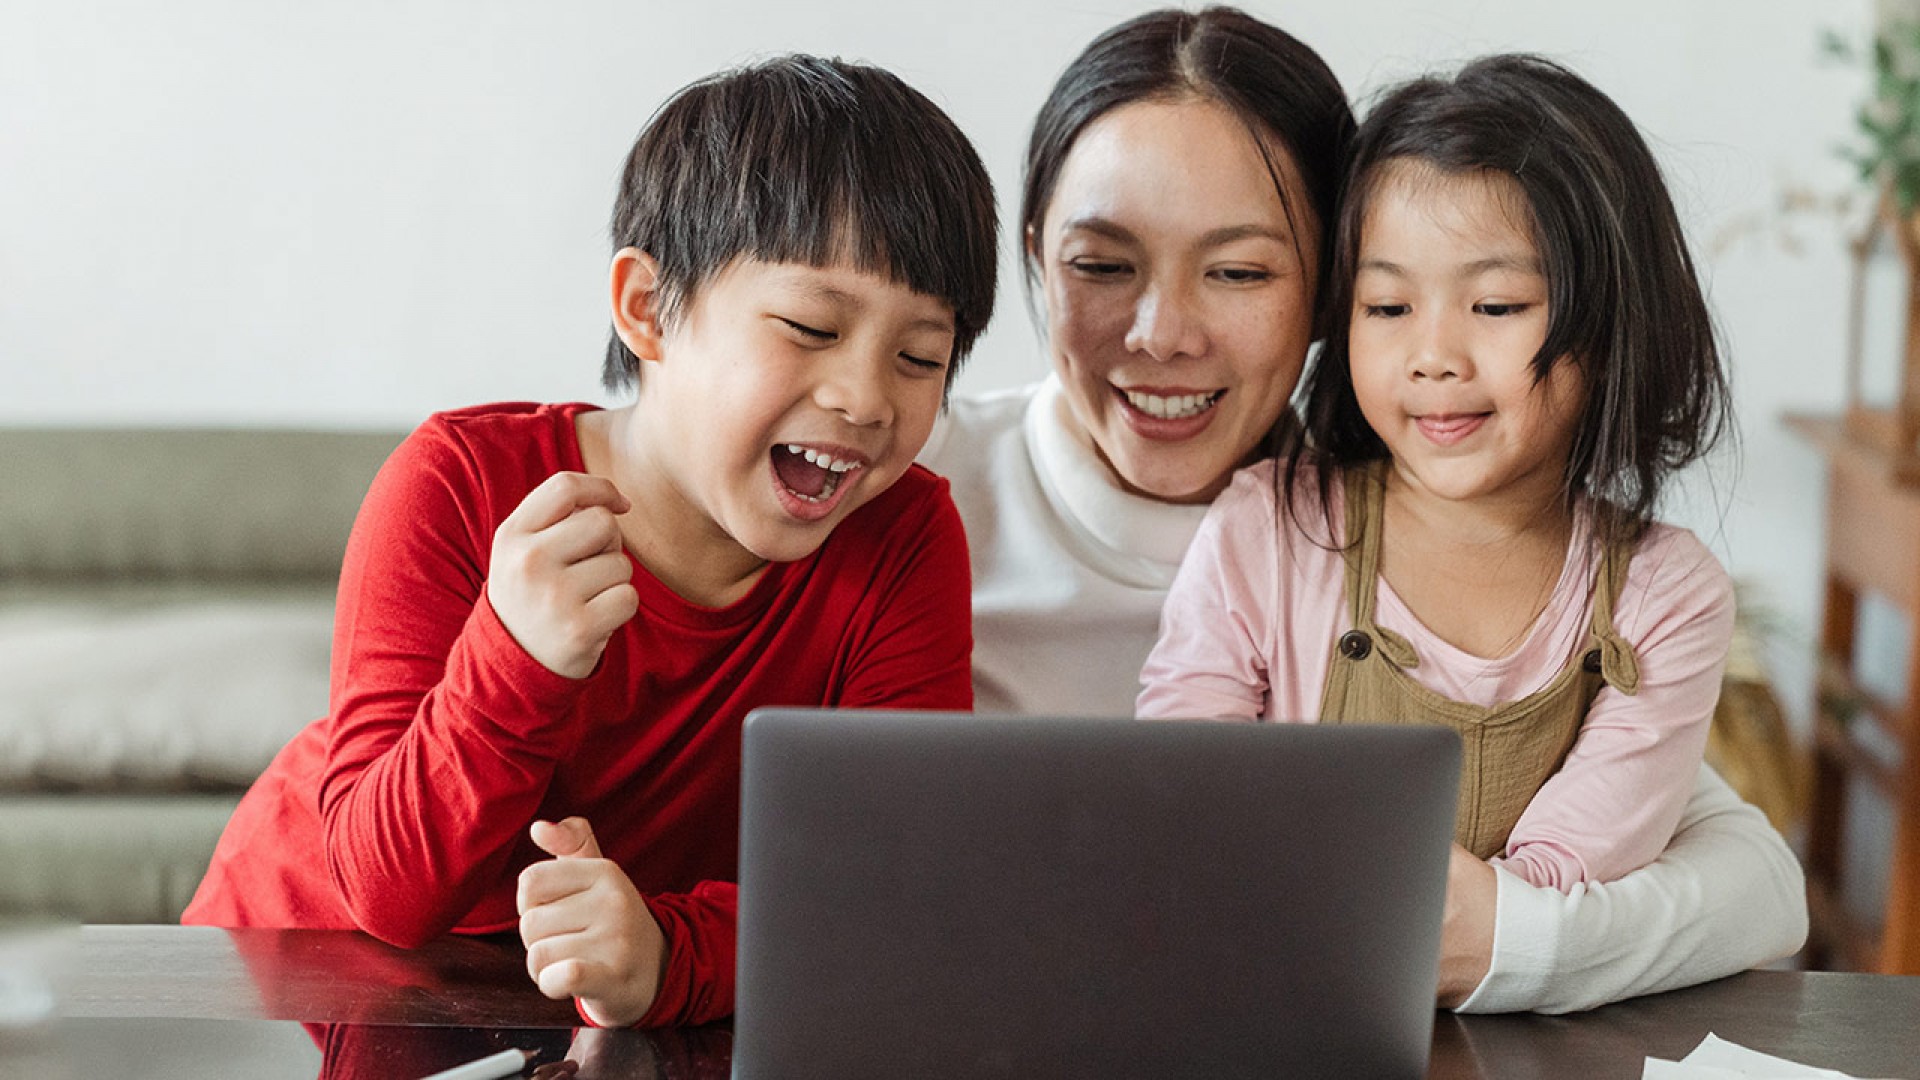 Học tiếng Anh online cho trẻ em: Những địa chỉ phụ huynh nên đầu tư